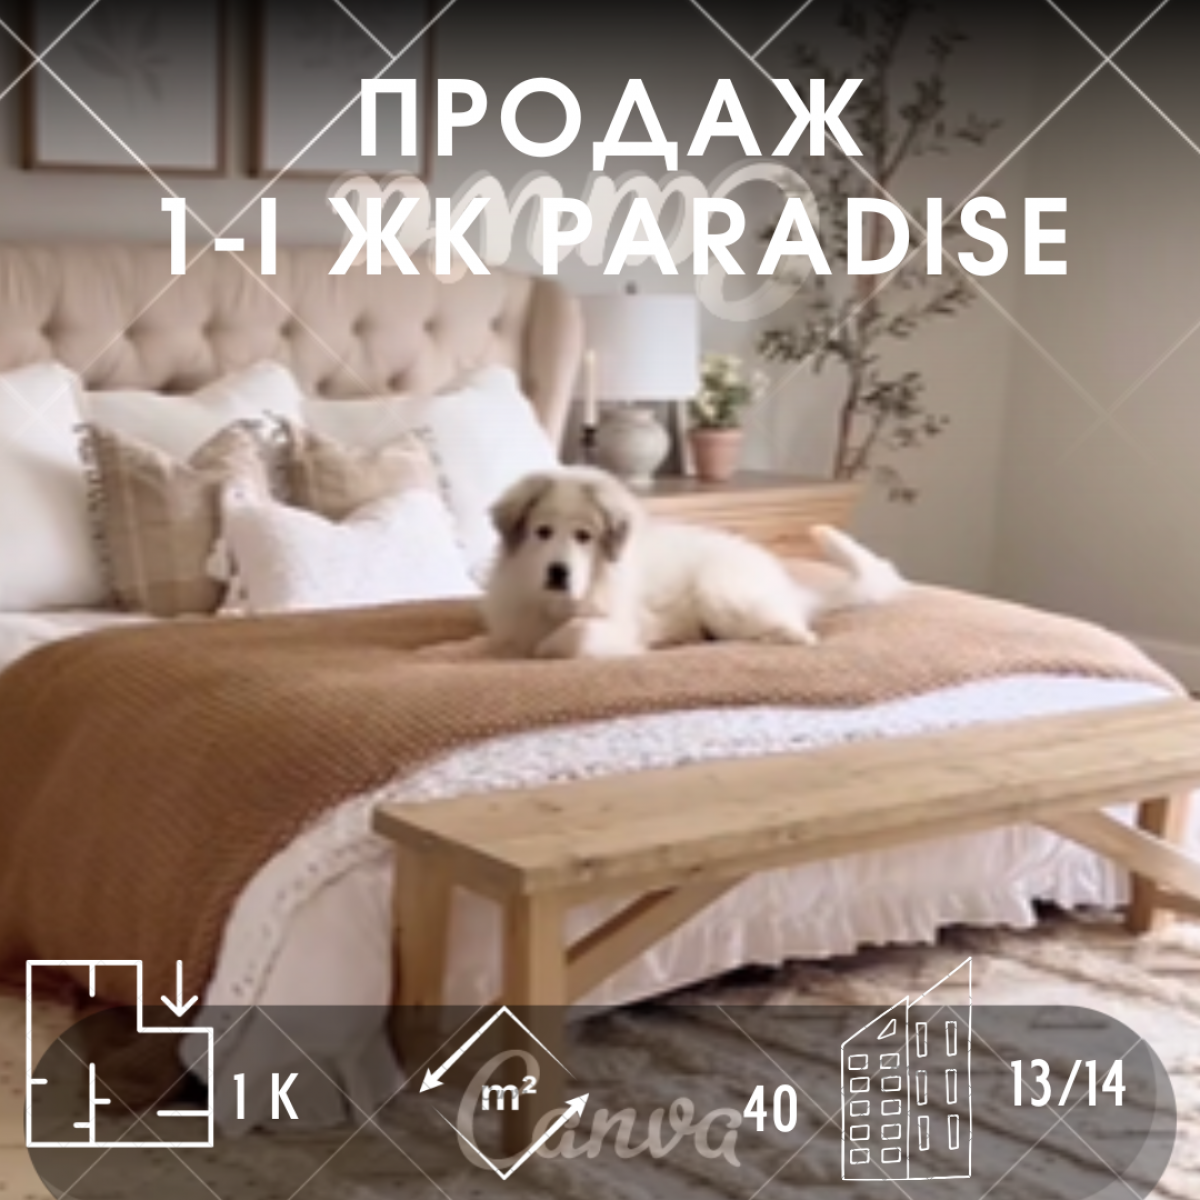 Ваша мрія про елітну 1 -ну квартиру в сучасному клубному будинку в центрі Чернігова по Проспекту Перемоги 131 вже реальна!